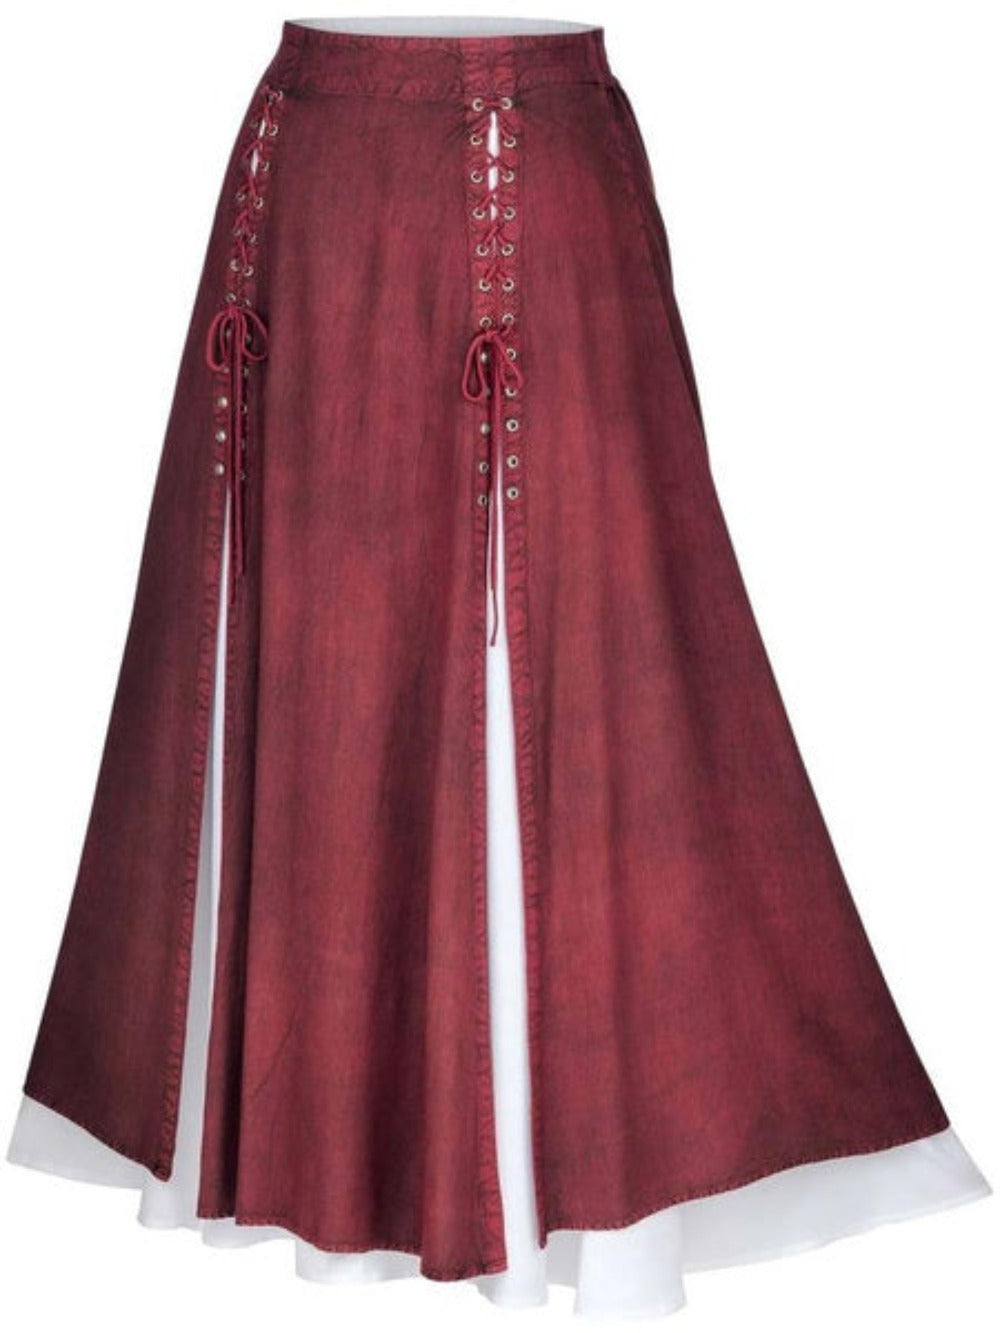 Renaissance Vintage Lace Up Maxi Skirt (4 Colors) S-5XL